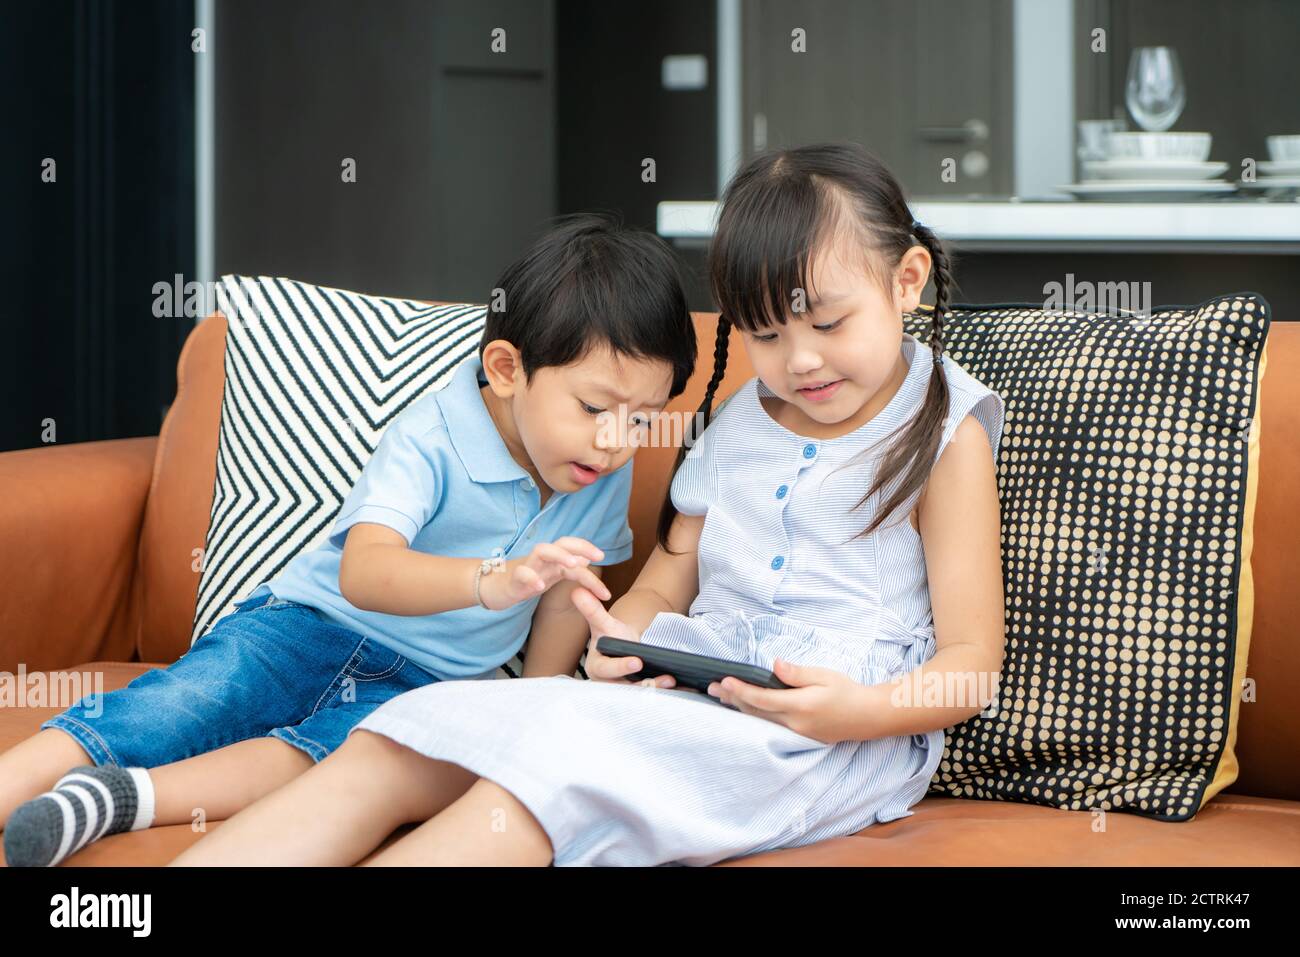 Asiatische nette Geschwister Kind mit einem Smartphone und lächeln für Video ansehen oder Spiel zusammen spielen, während Sie auf dem Sofa sitzen Im Wohnzimmer zu Hause Stockfoto